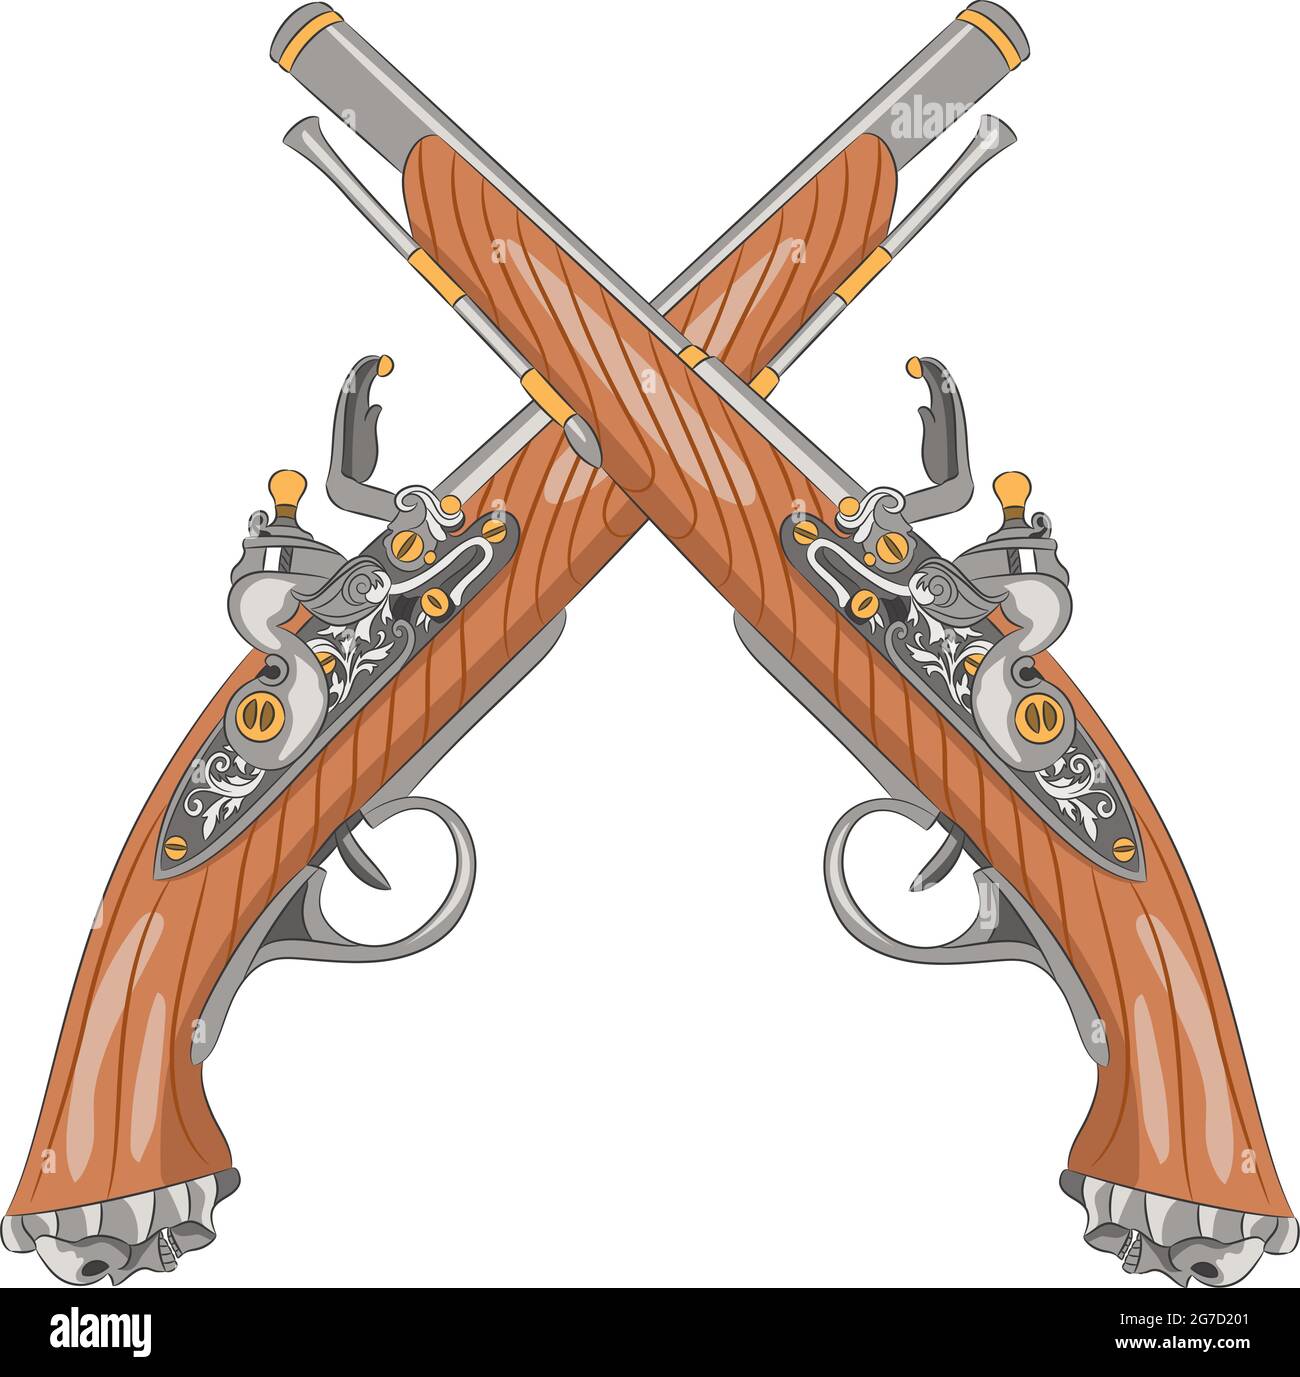 Coppia di pistole flintlock vintage isolate su sfondo bianco. Illustrazione Vettoriale